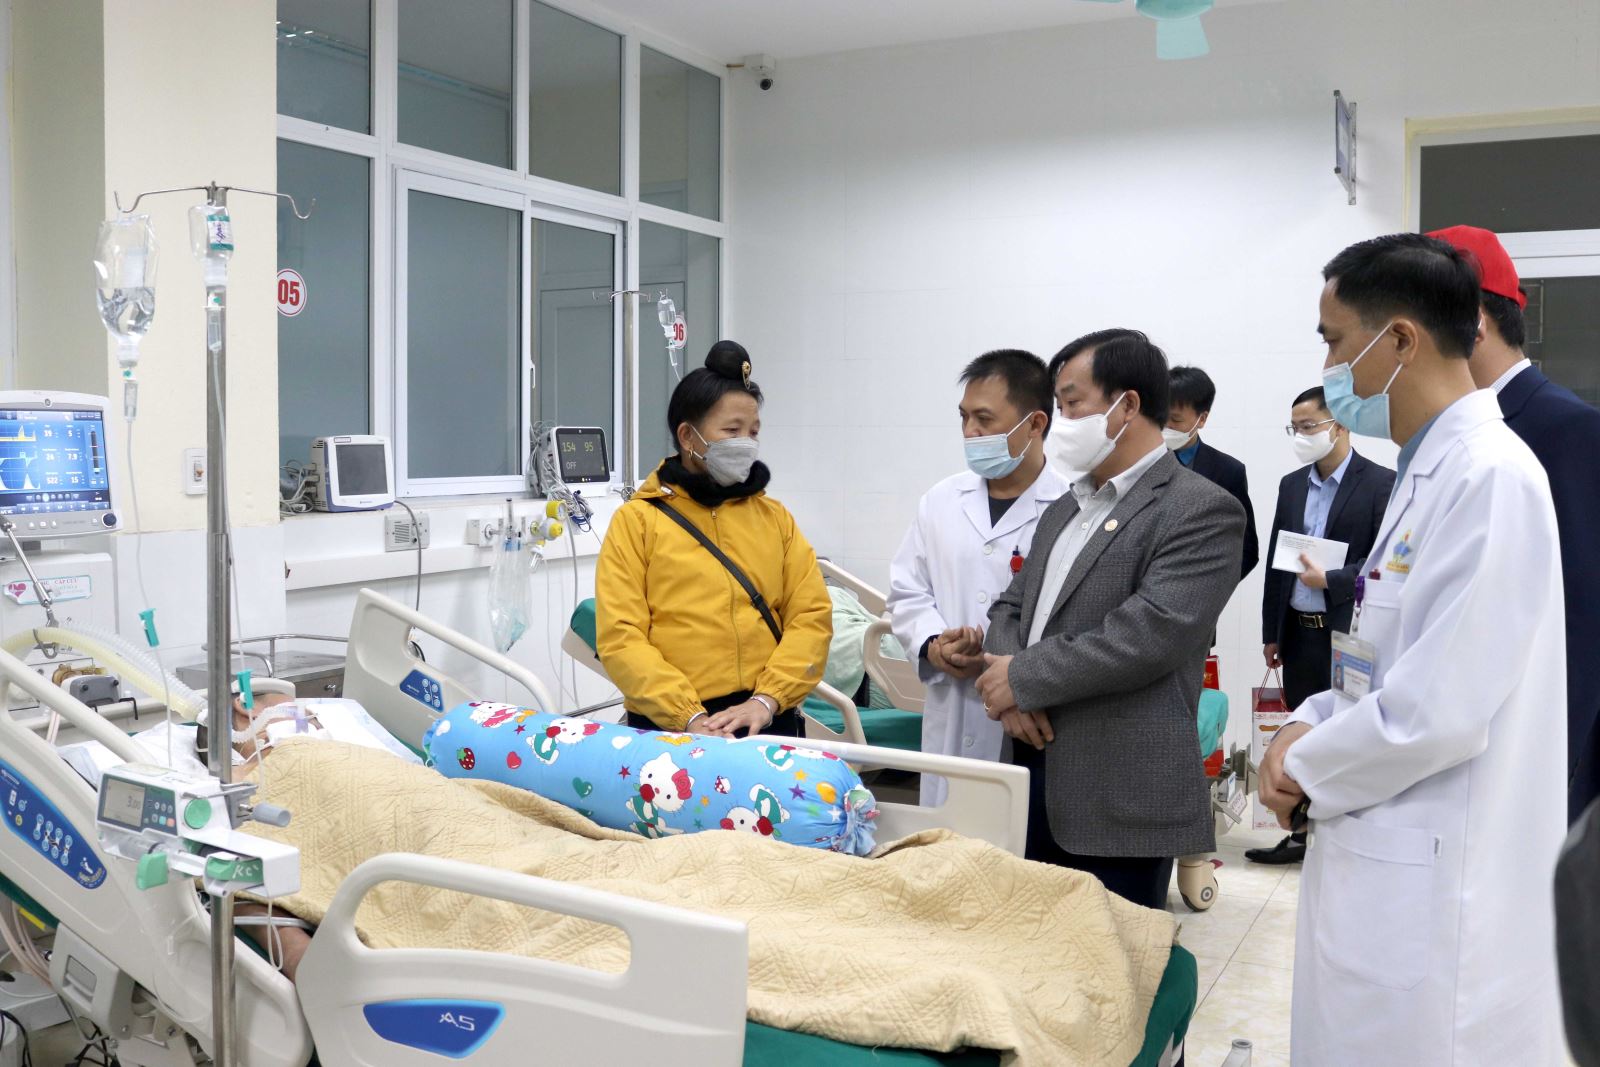 Đồng chí Vừ A Bằng, Phó Chủ tịch UBND tỉnh ân cần thăm hỏi, động viên các bệnh nhân và người nhà bệnh nhân tại Khoa Cấp cứu, Bệnh viện Đa khoa tỉnh